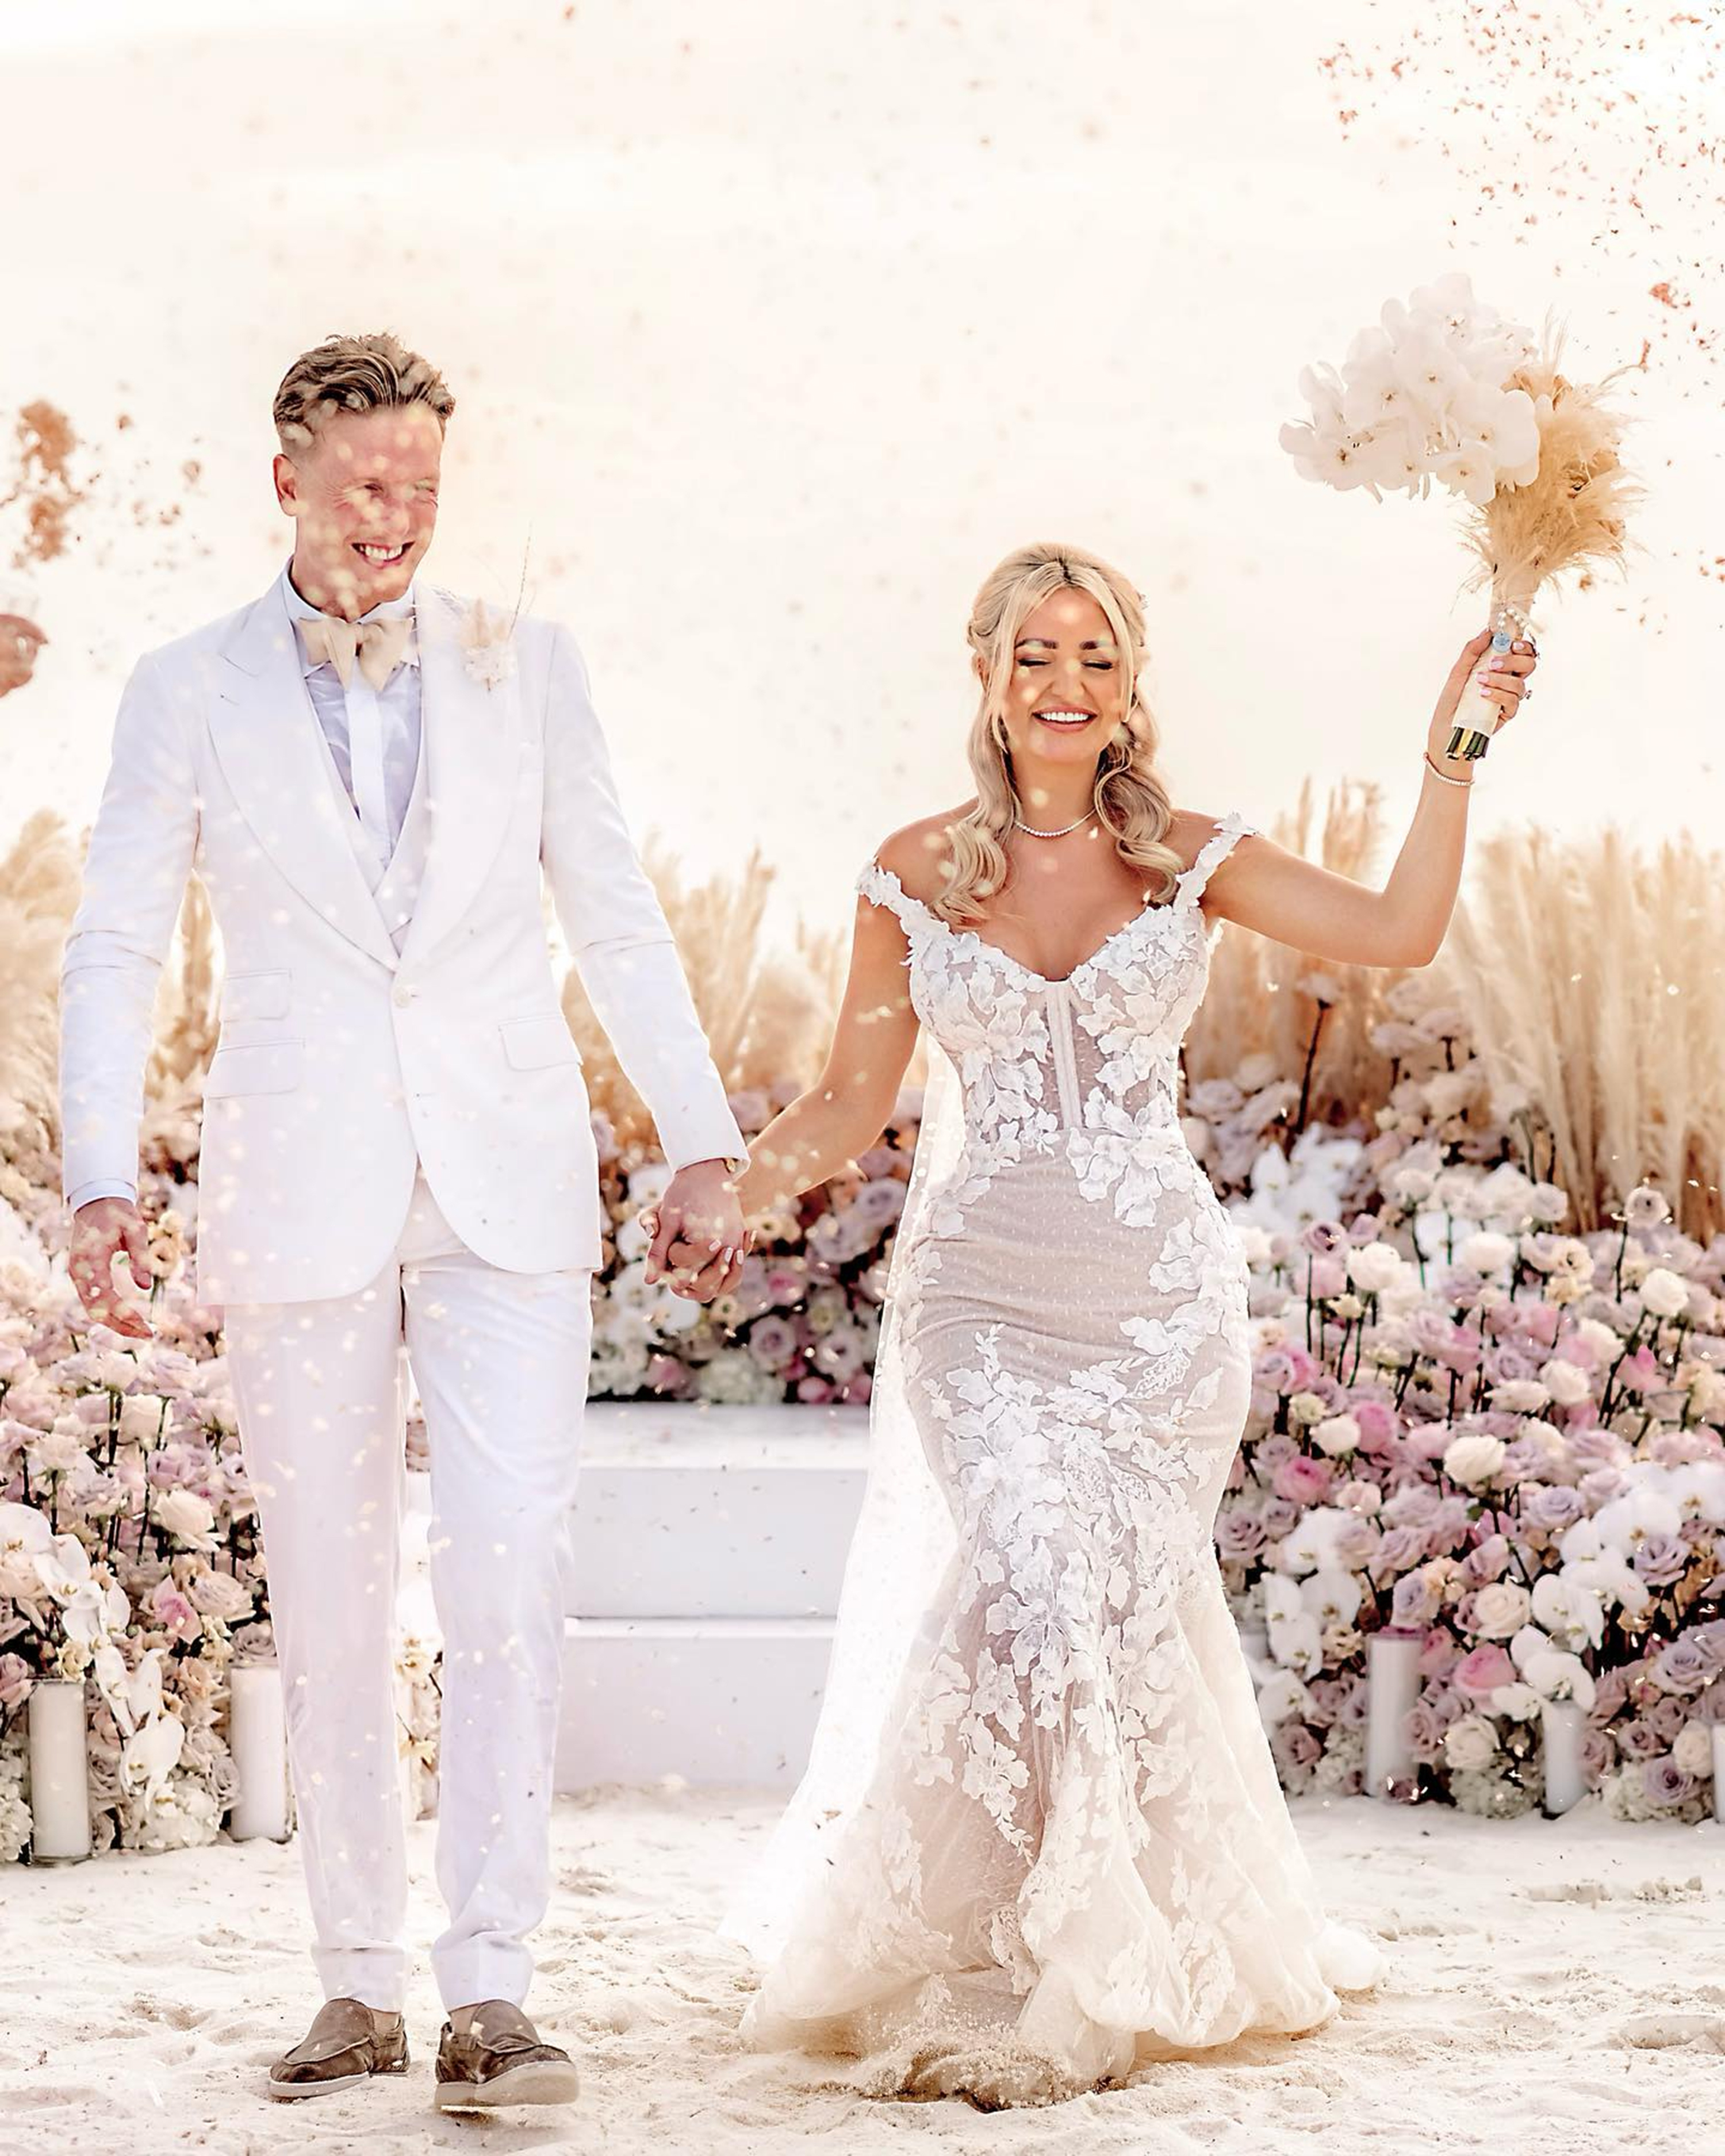   Jordan Pickford s'est marié avec Megan Davison pour la deuxième fois lors d'une cérémonie romantique aux Maldives